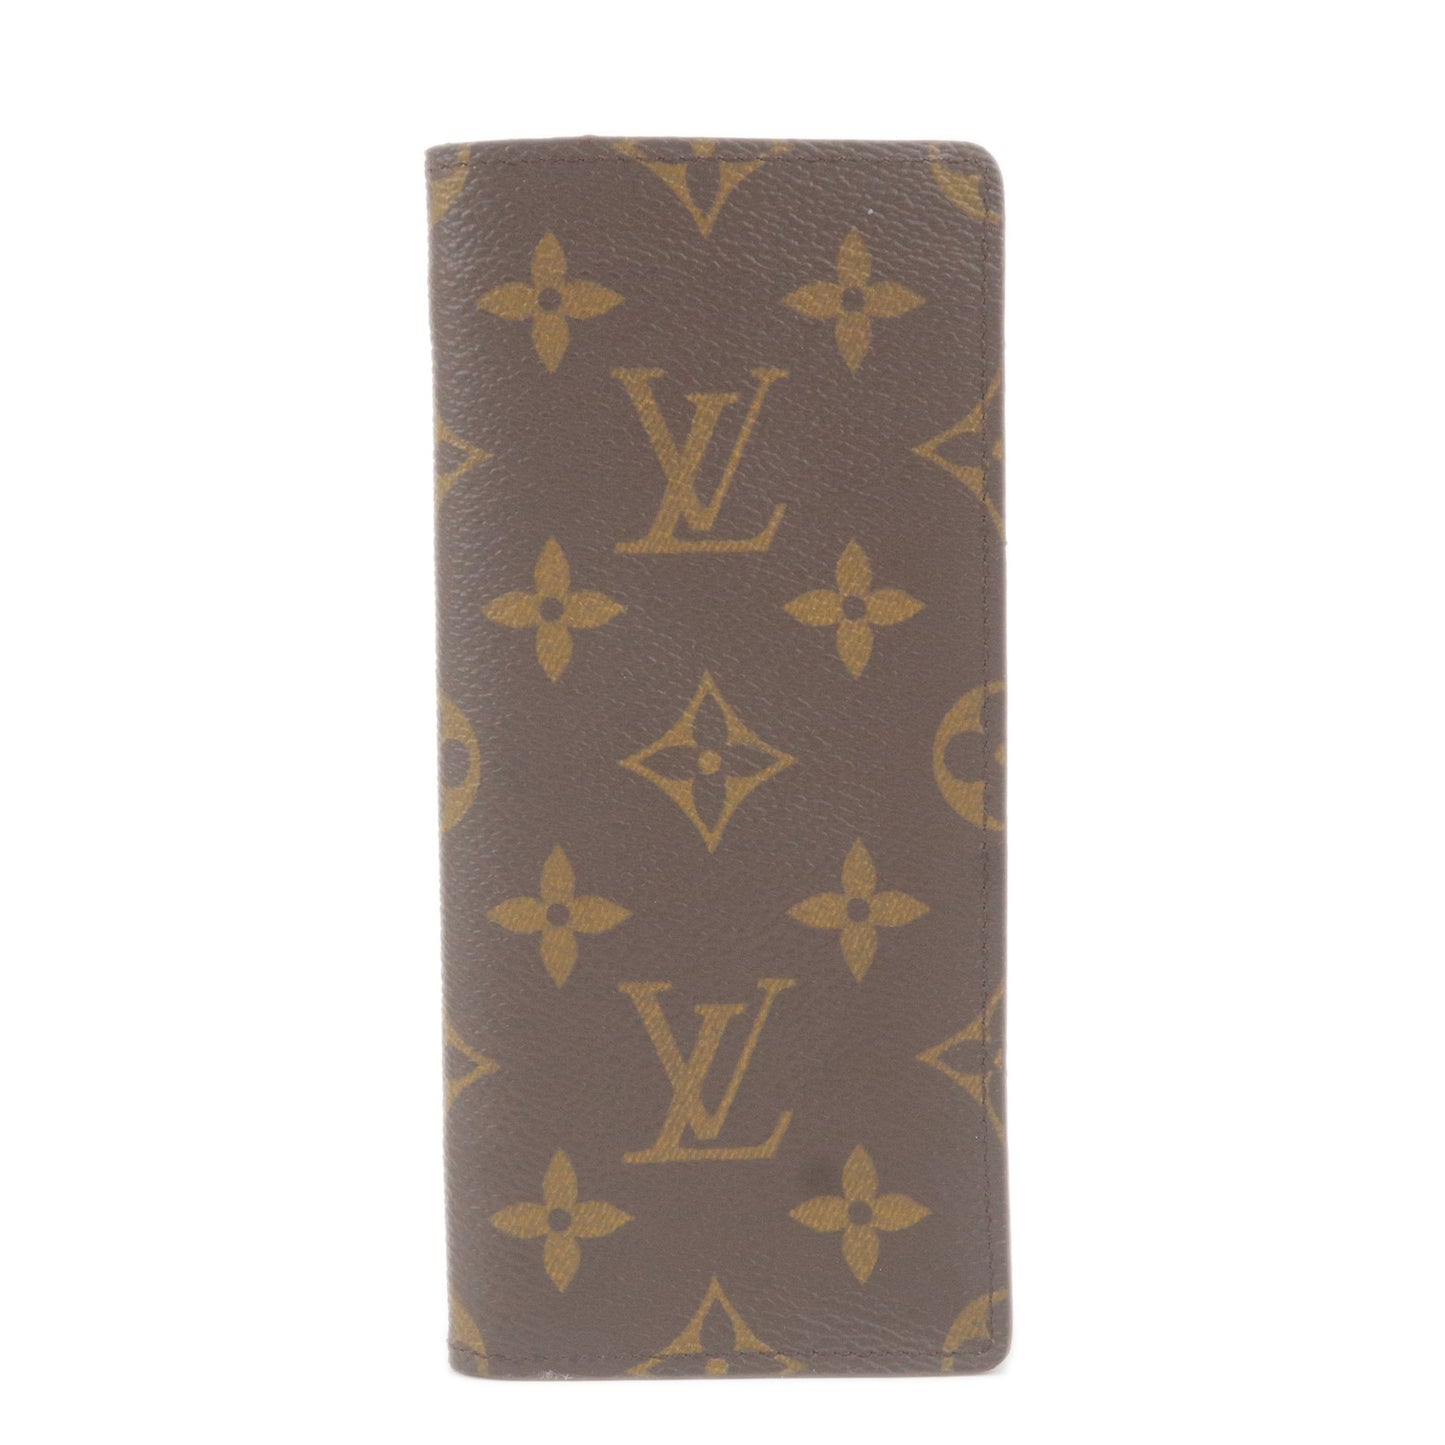 100% Authentic Louis Vuitton Eye Glasses Case Etui Lunette Monogram Wallet